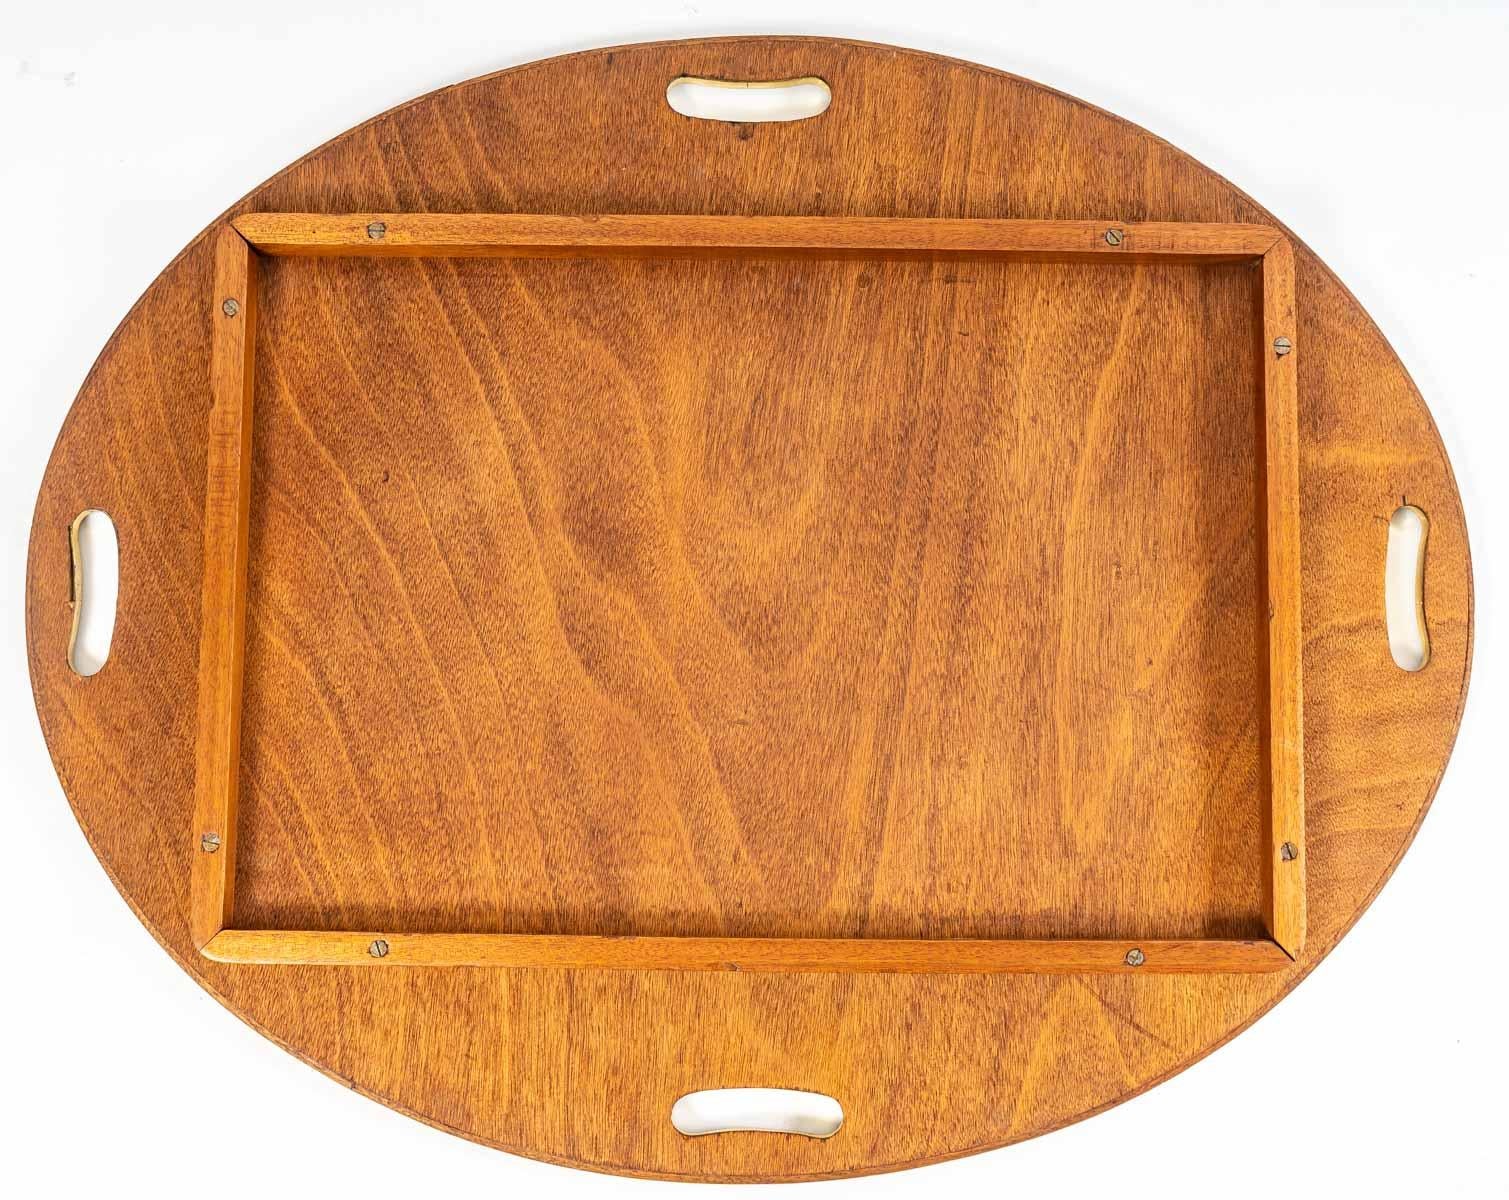 Table Basse de Bateau avec son plateau amovible en acajou et laiton, XXème siècle.
Measures: H: 54 cm, L: 92 cm, P: 74 cm
SM7001
 